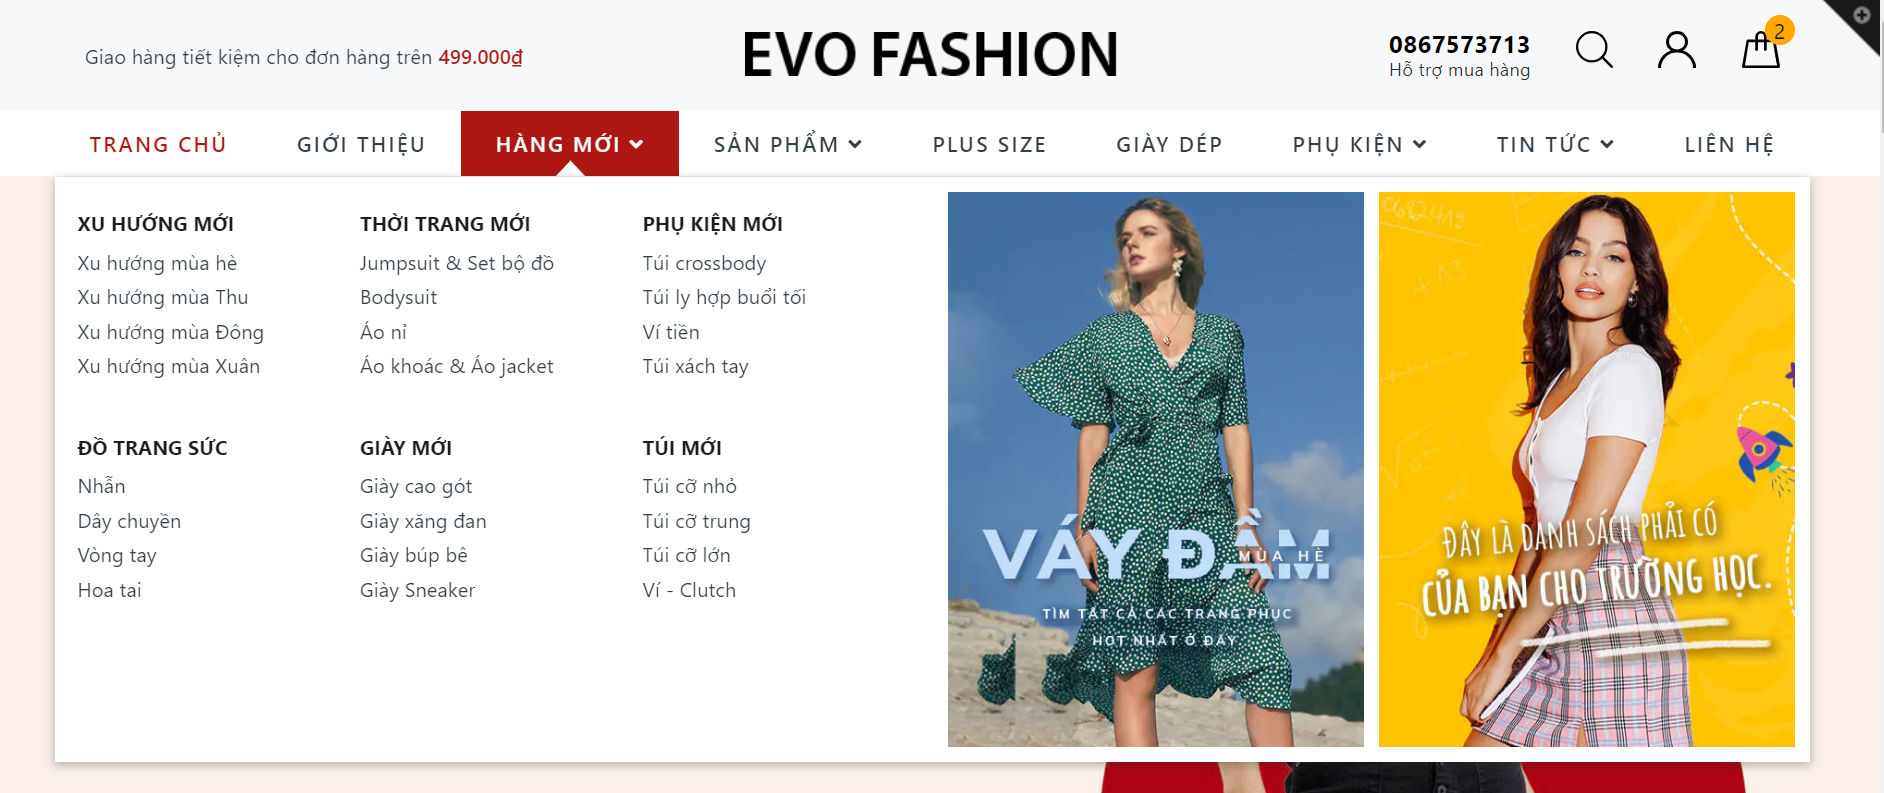 Evo Fashion menu